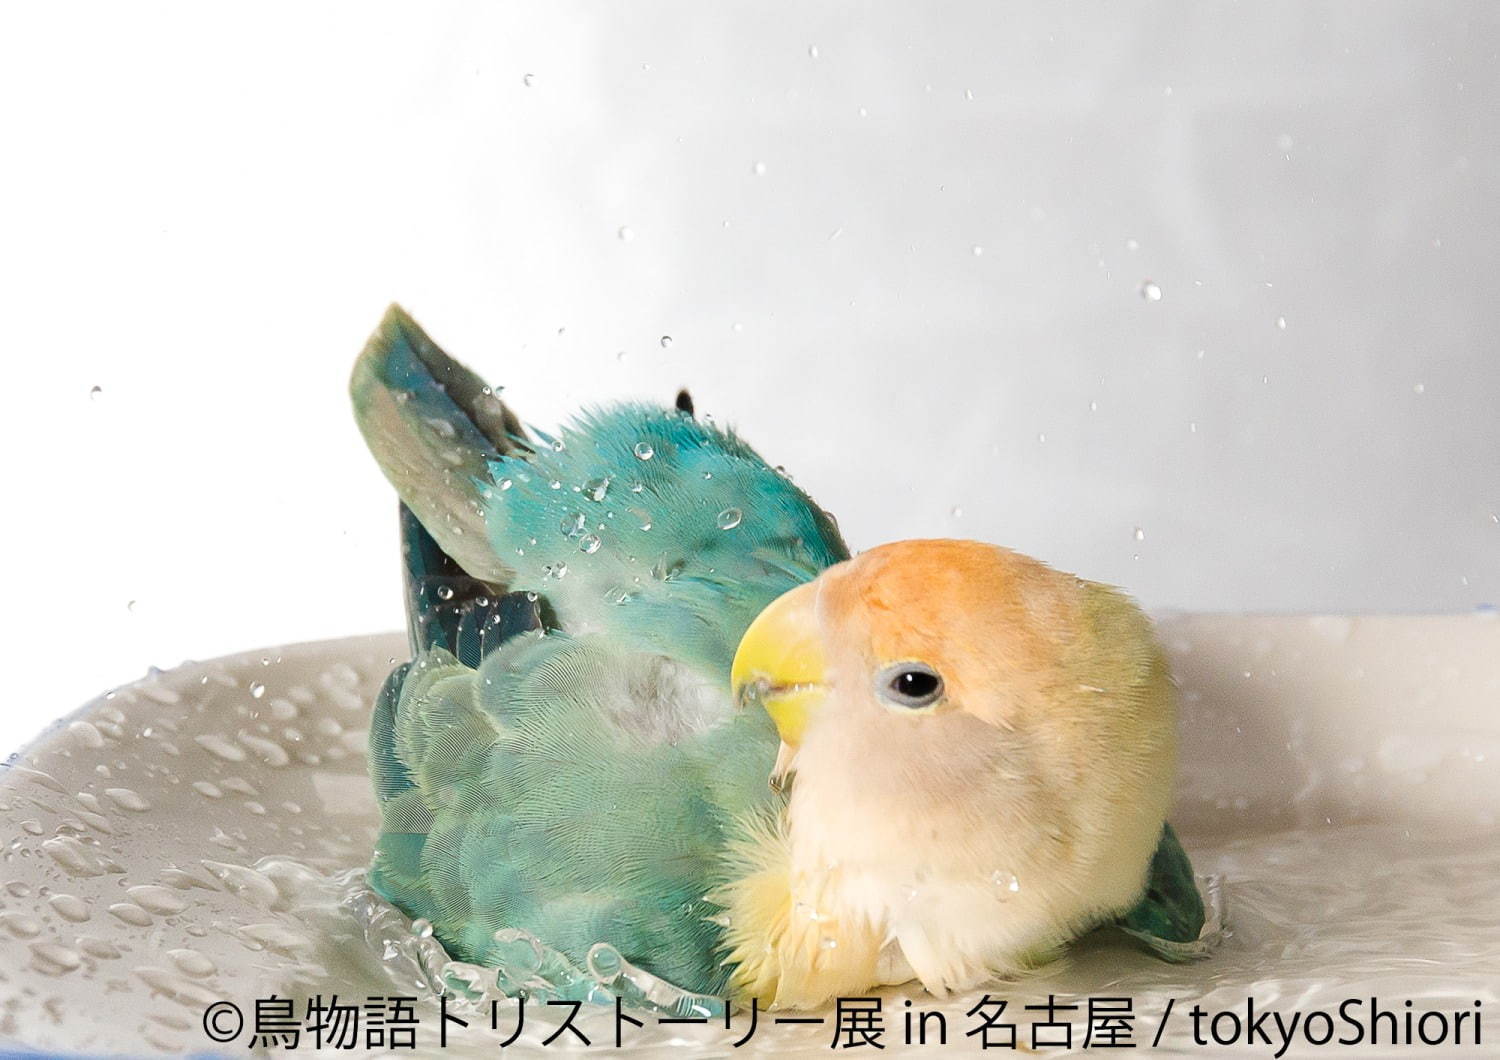 「鳥物語トリストーリー展」名古屋で、鳥の“一瞬の美しさ”を表した写真展＆ハンドメイドグッズ物販 | 写真